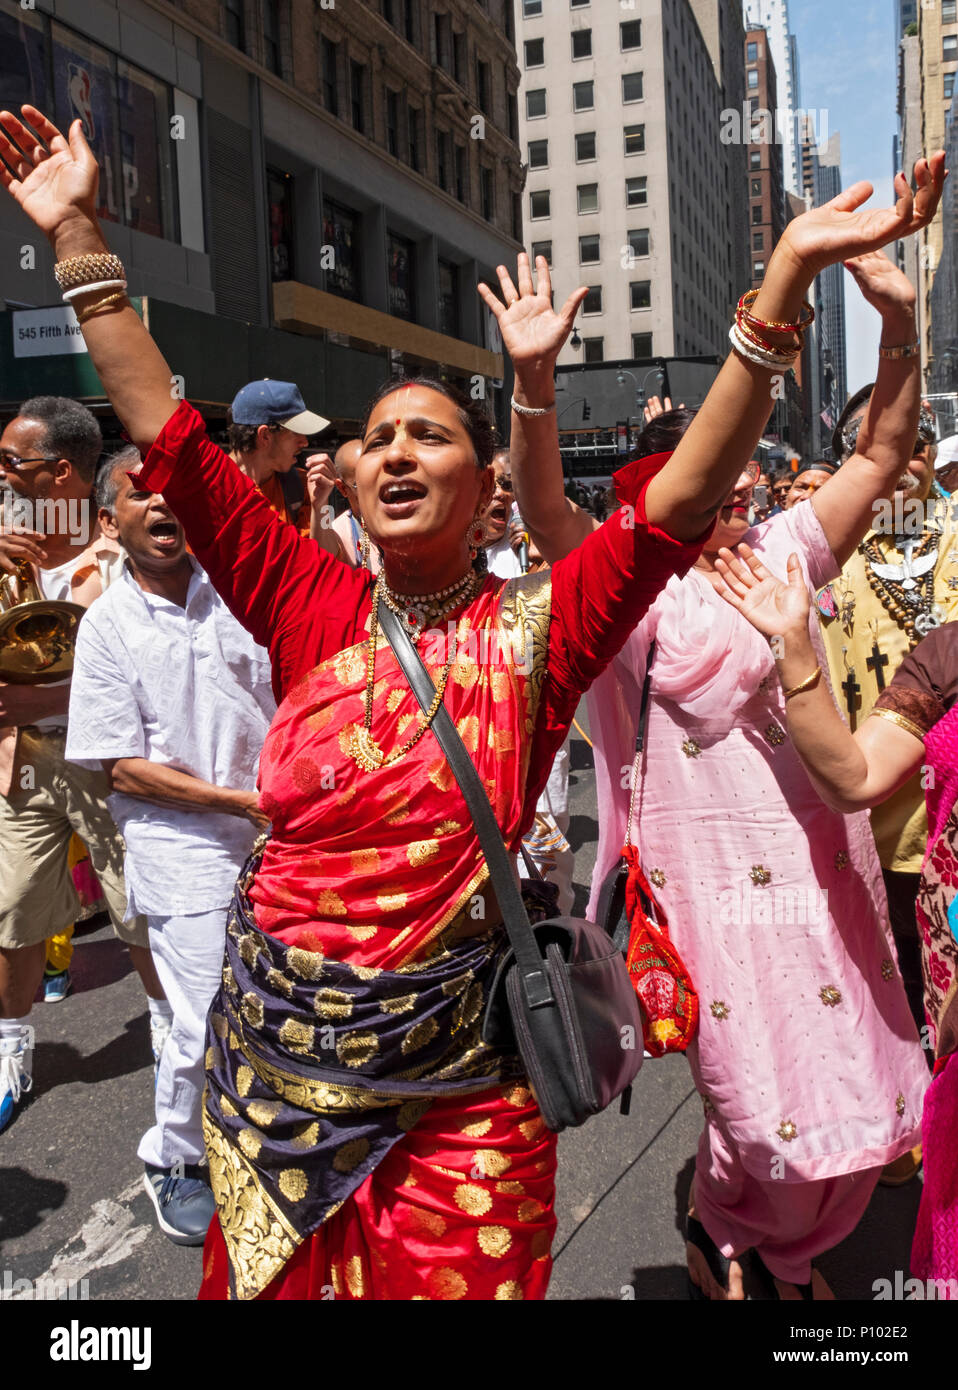 Une femme en sari colorés scander à l'Rathayatra festival et défilé de chars à Midtown Manhattan, New York. Banque D'Images